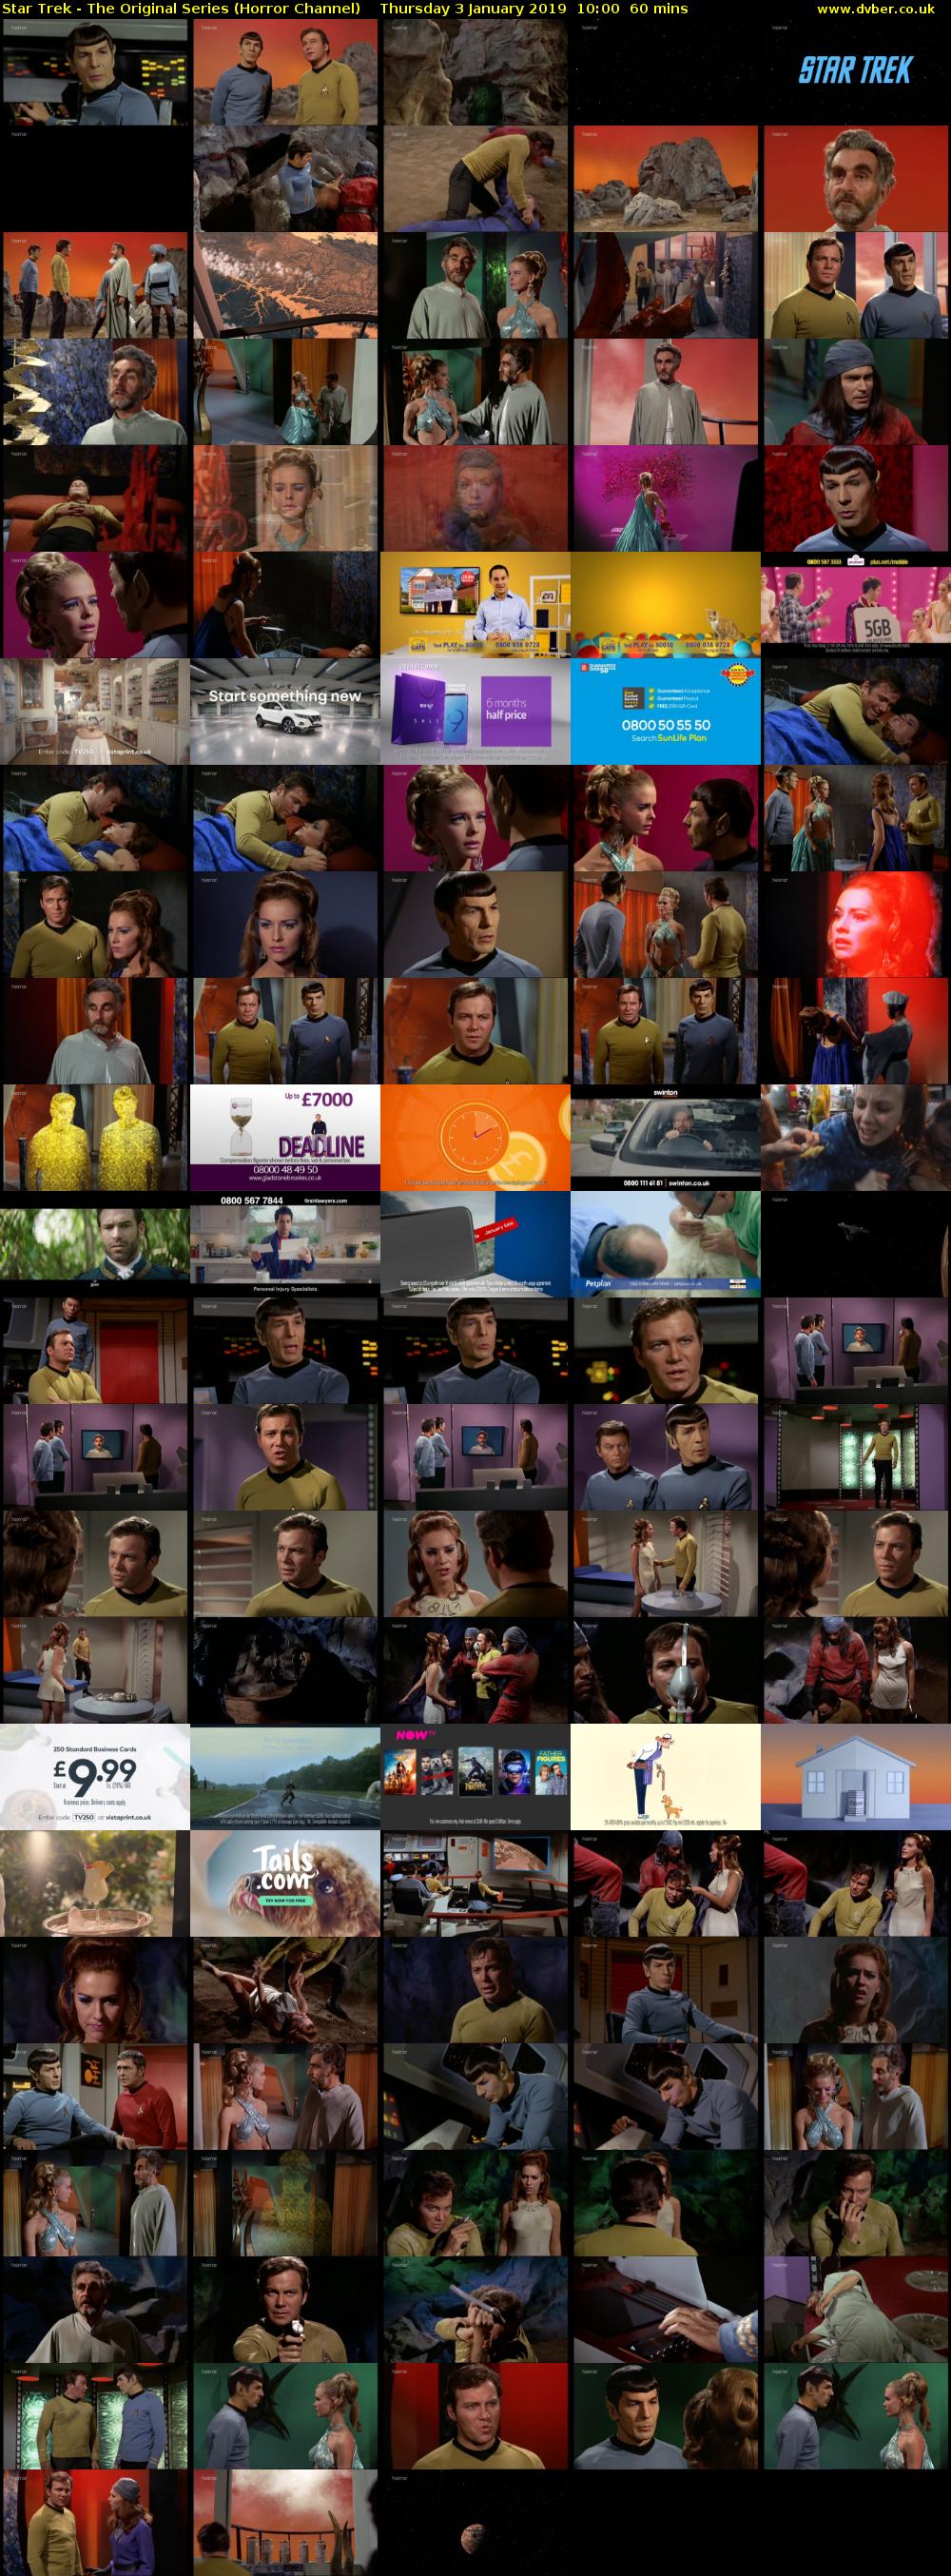 Star Trek - The Original Series (Horror Channel) Thursday 3 January 2019 10:00 - 11:00